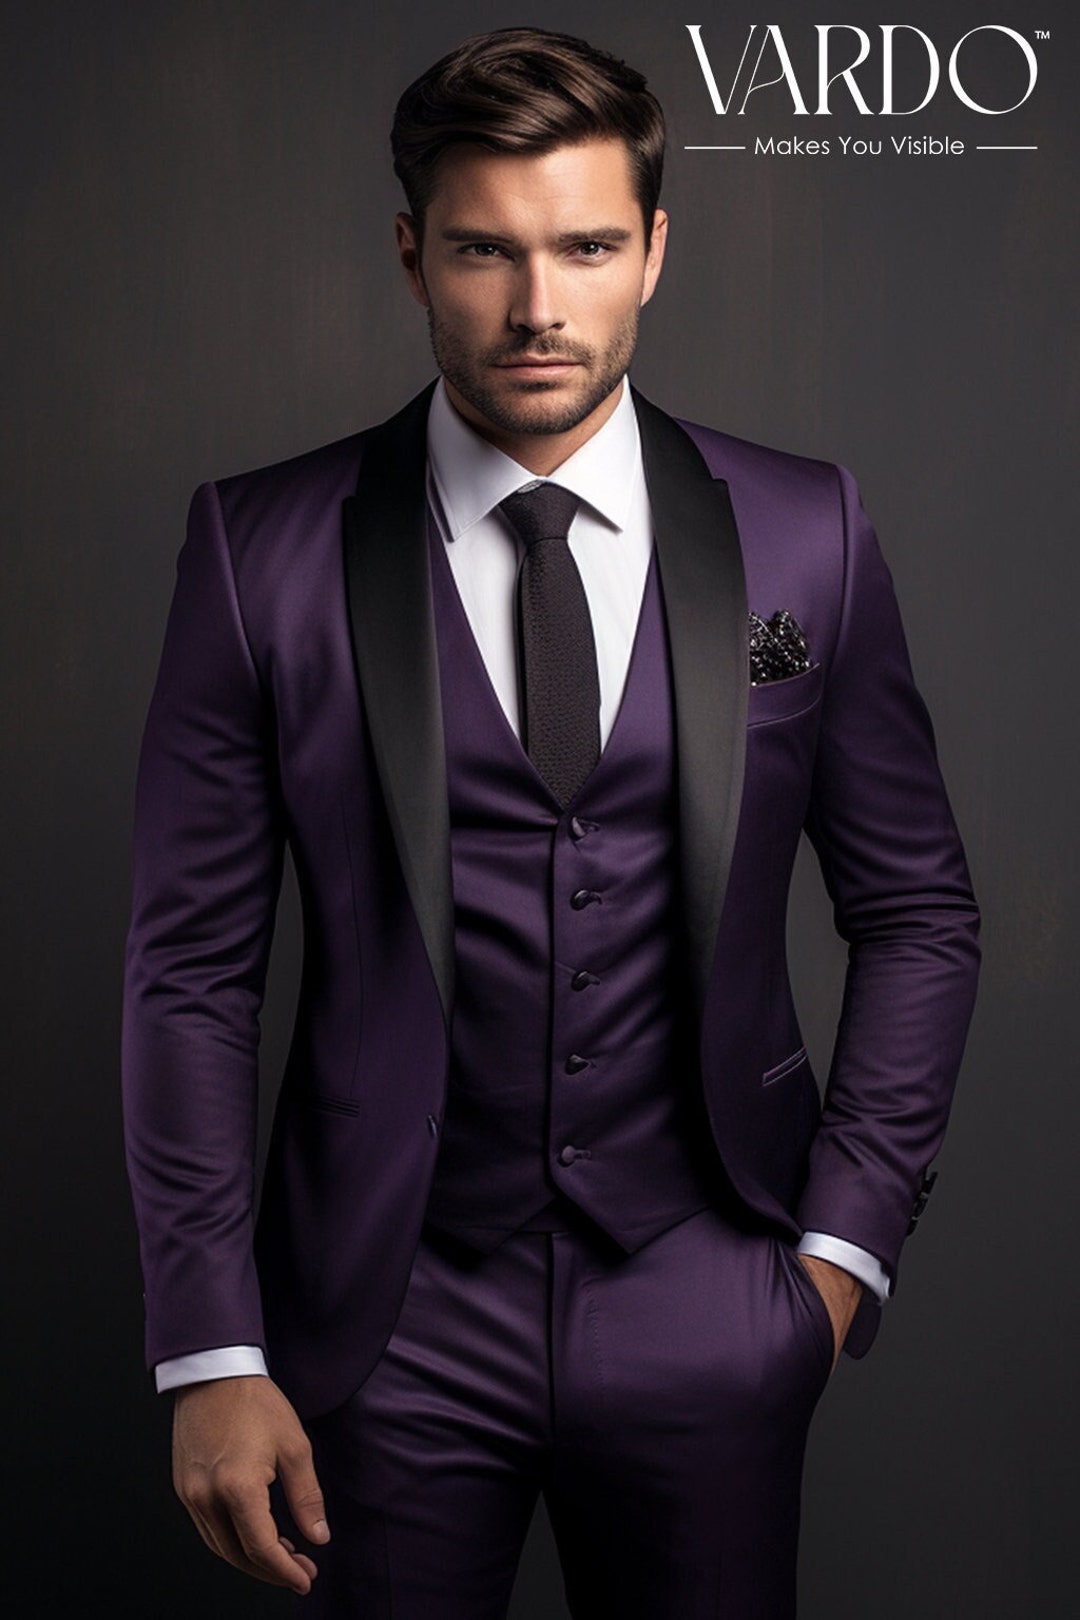 Regal Purple Tuxedo Suit for Men Premium Quality Elegant - Etsy